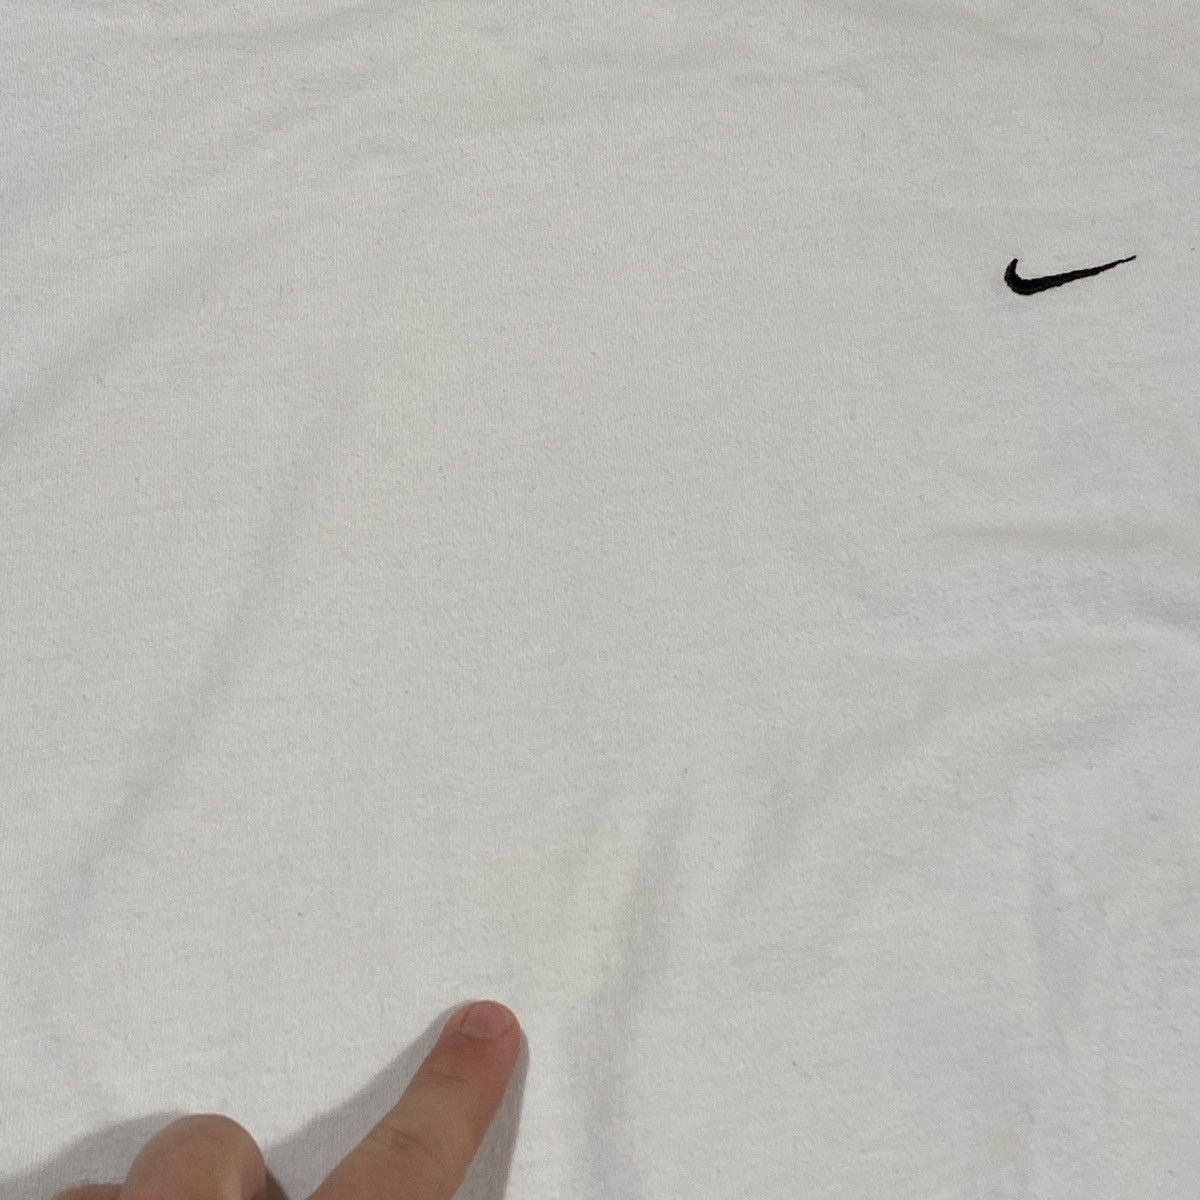 Nike 90’s Nike Mini Swoosh Tee Shirt Size US L / EU 52-54 / 3 - 3 Thumbnail